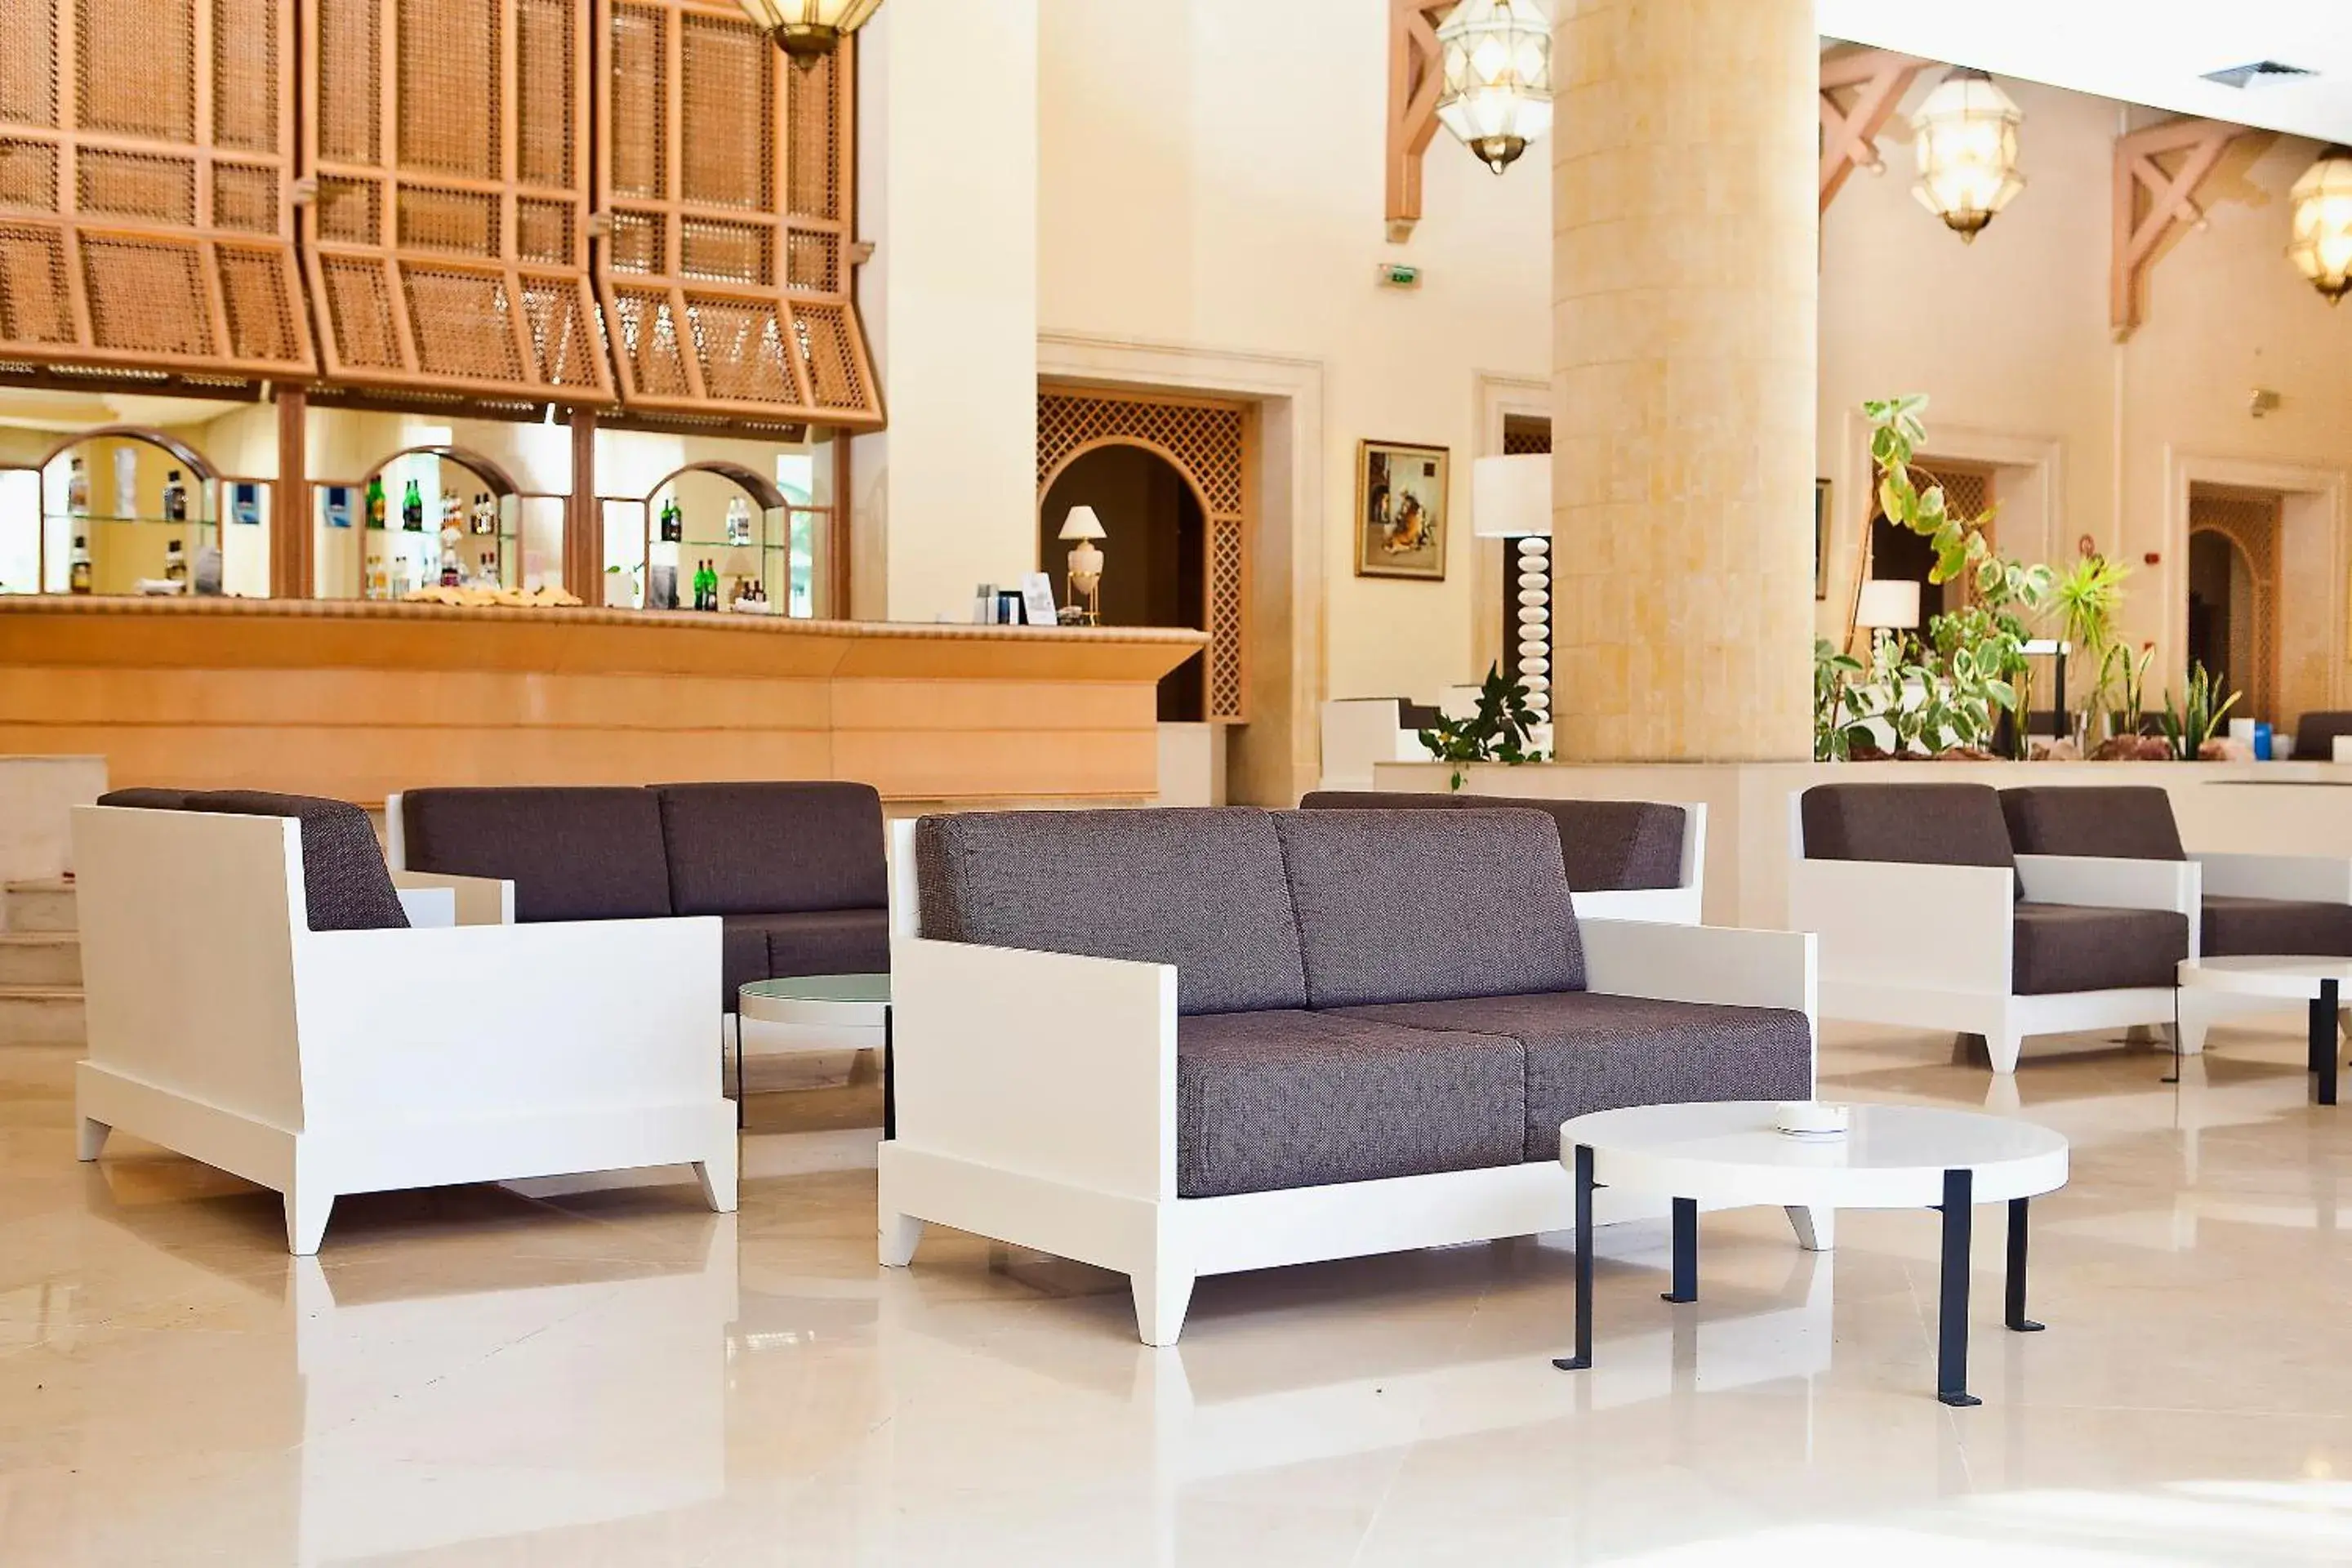 Banquet/Function facilities, Lobby/Reception in El Mouradi Hammamet